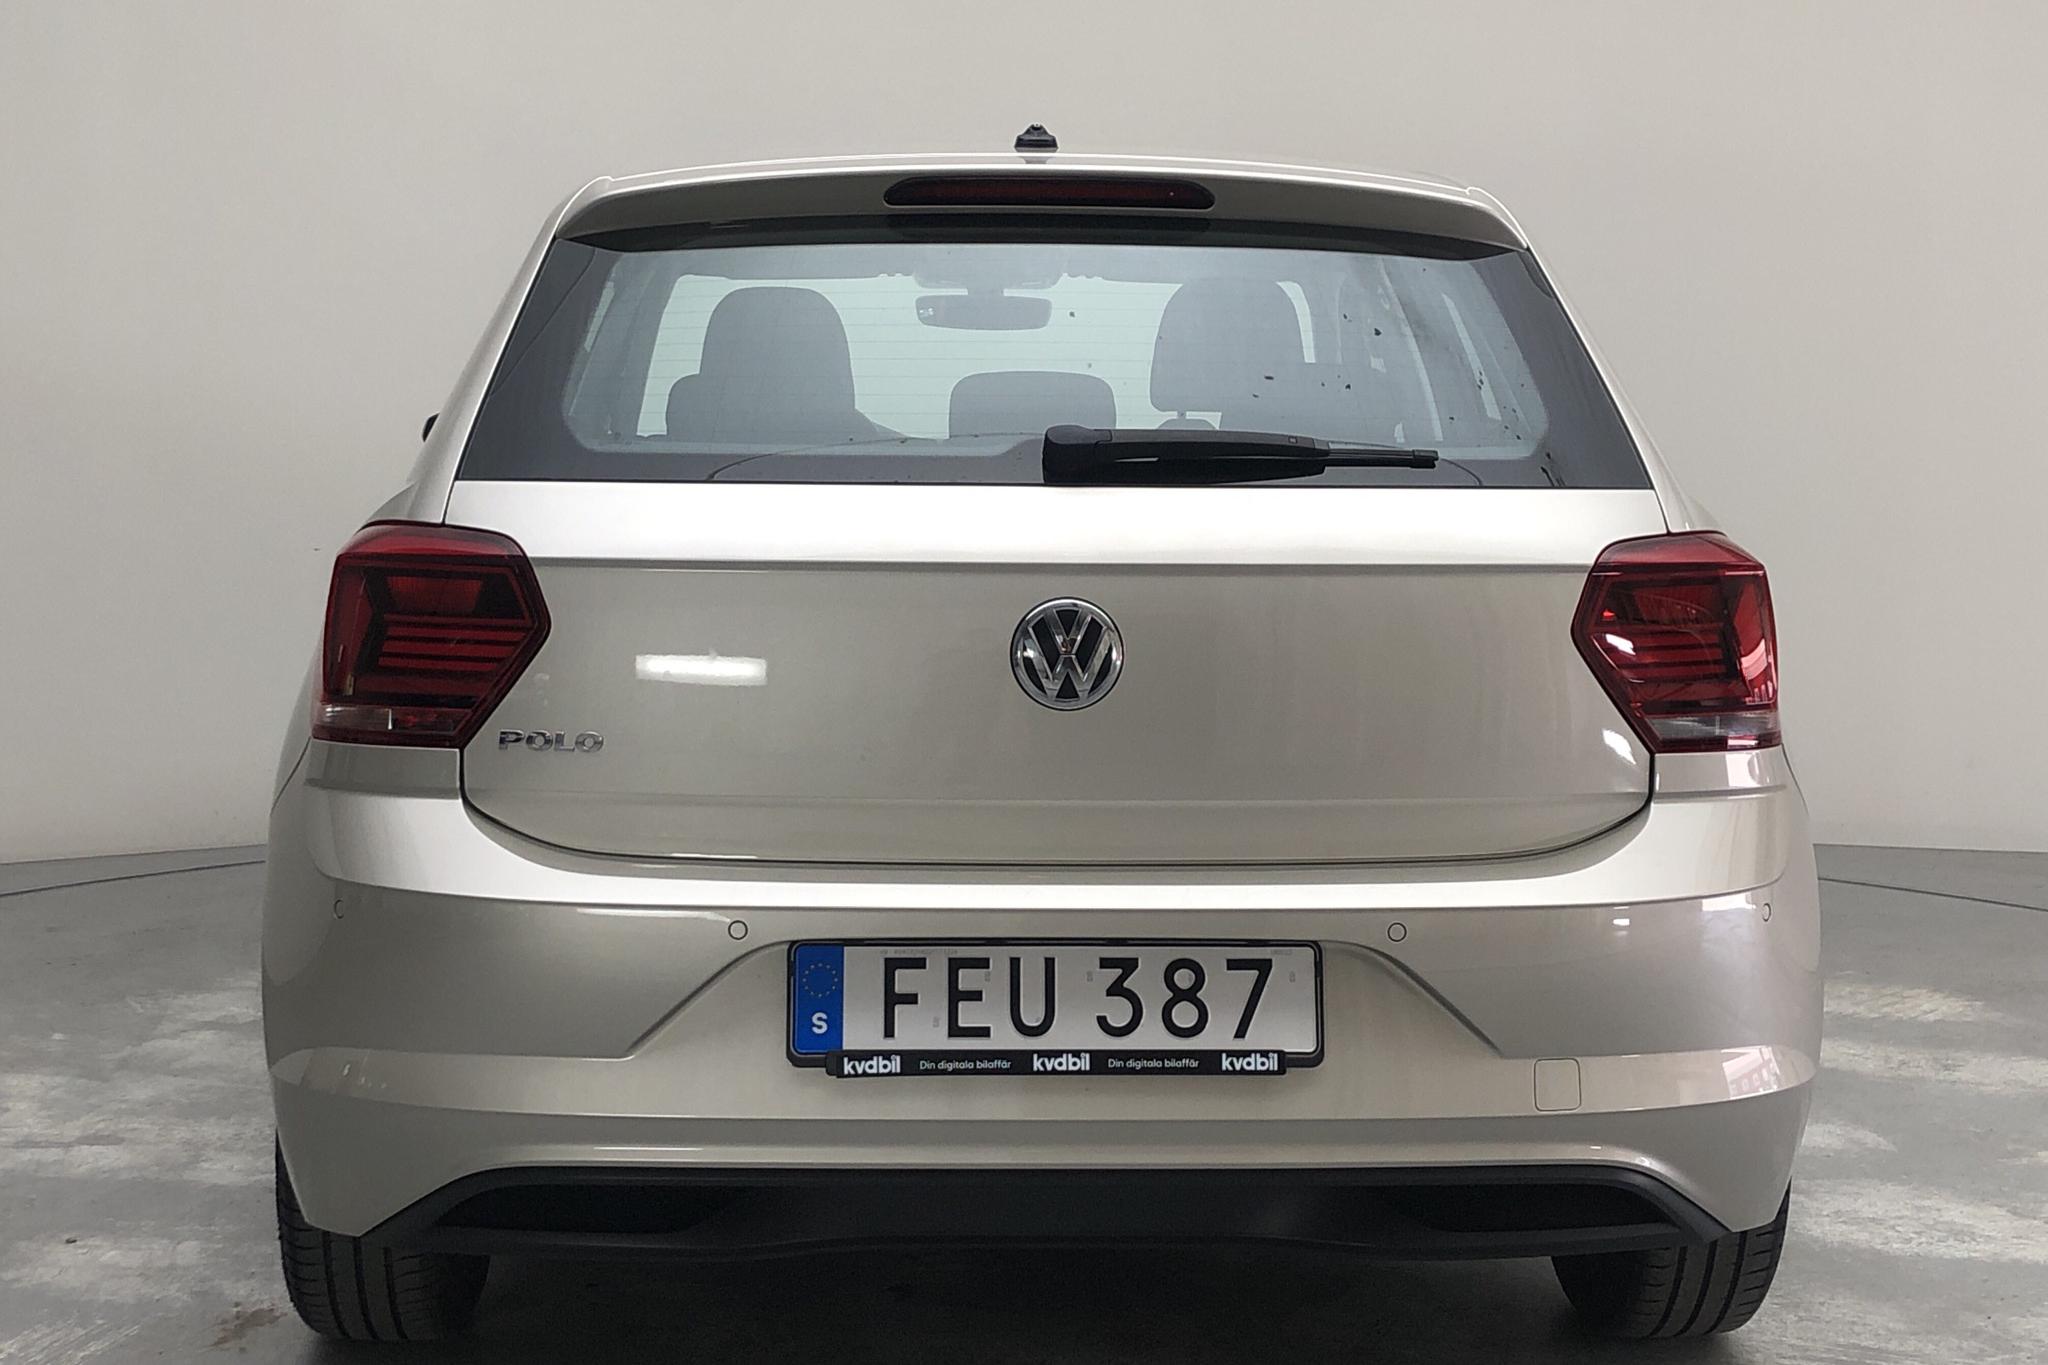 VW Polo 1.0 TSI 5dr (95hk) - 7 048 mil - Automat - 2018